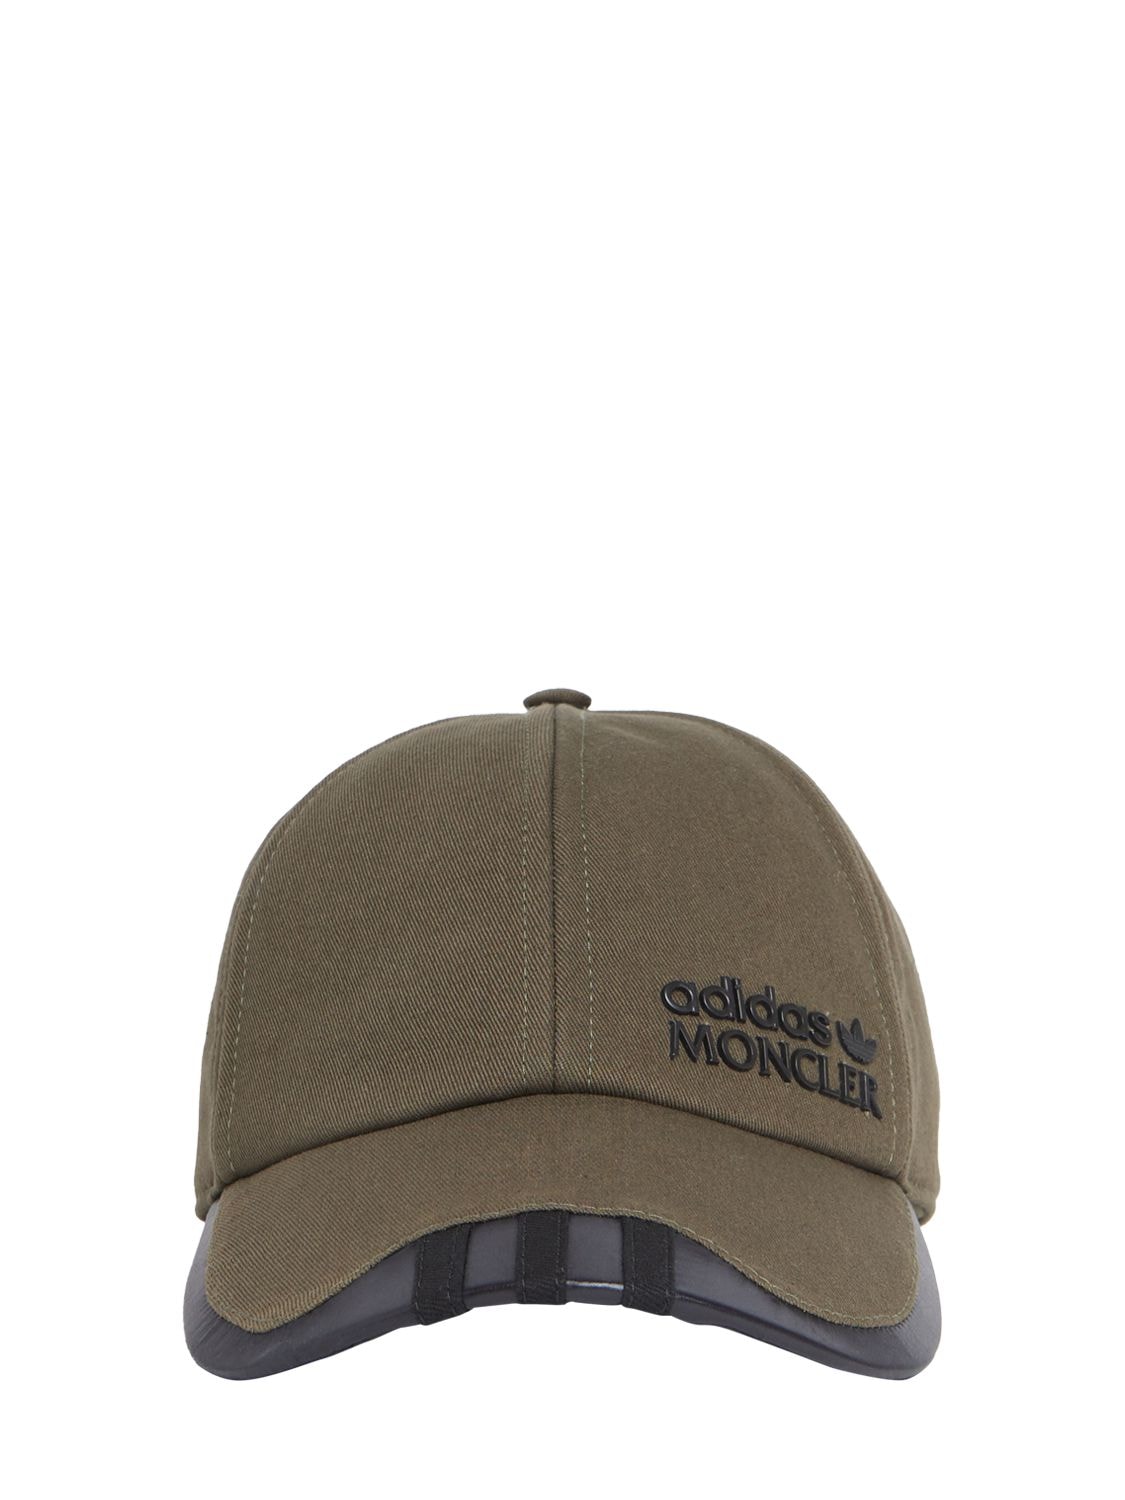 Moncler X Adidas Cotton Baseball Cap – WOMEN > ACCESSORIES > HATS